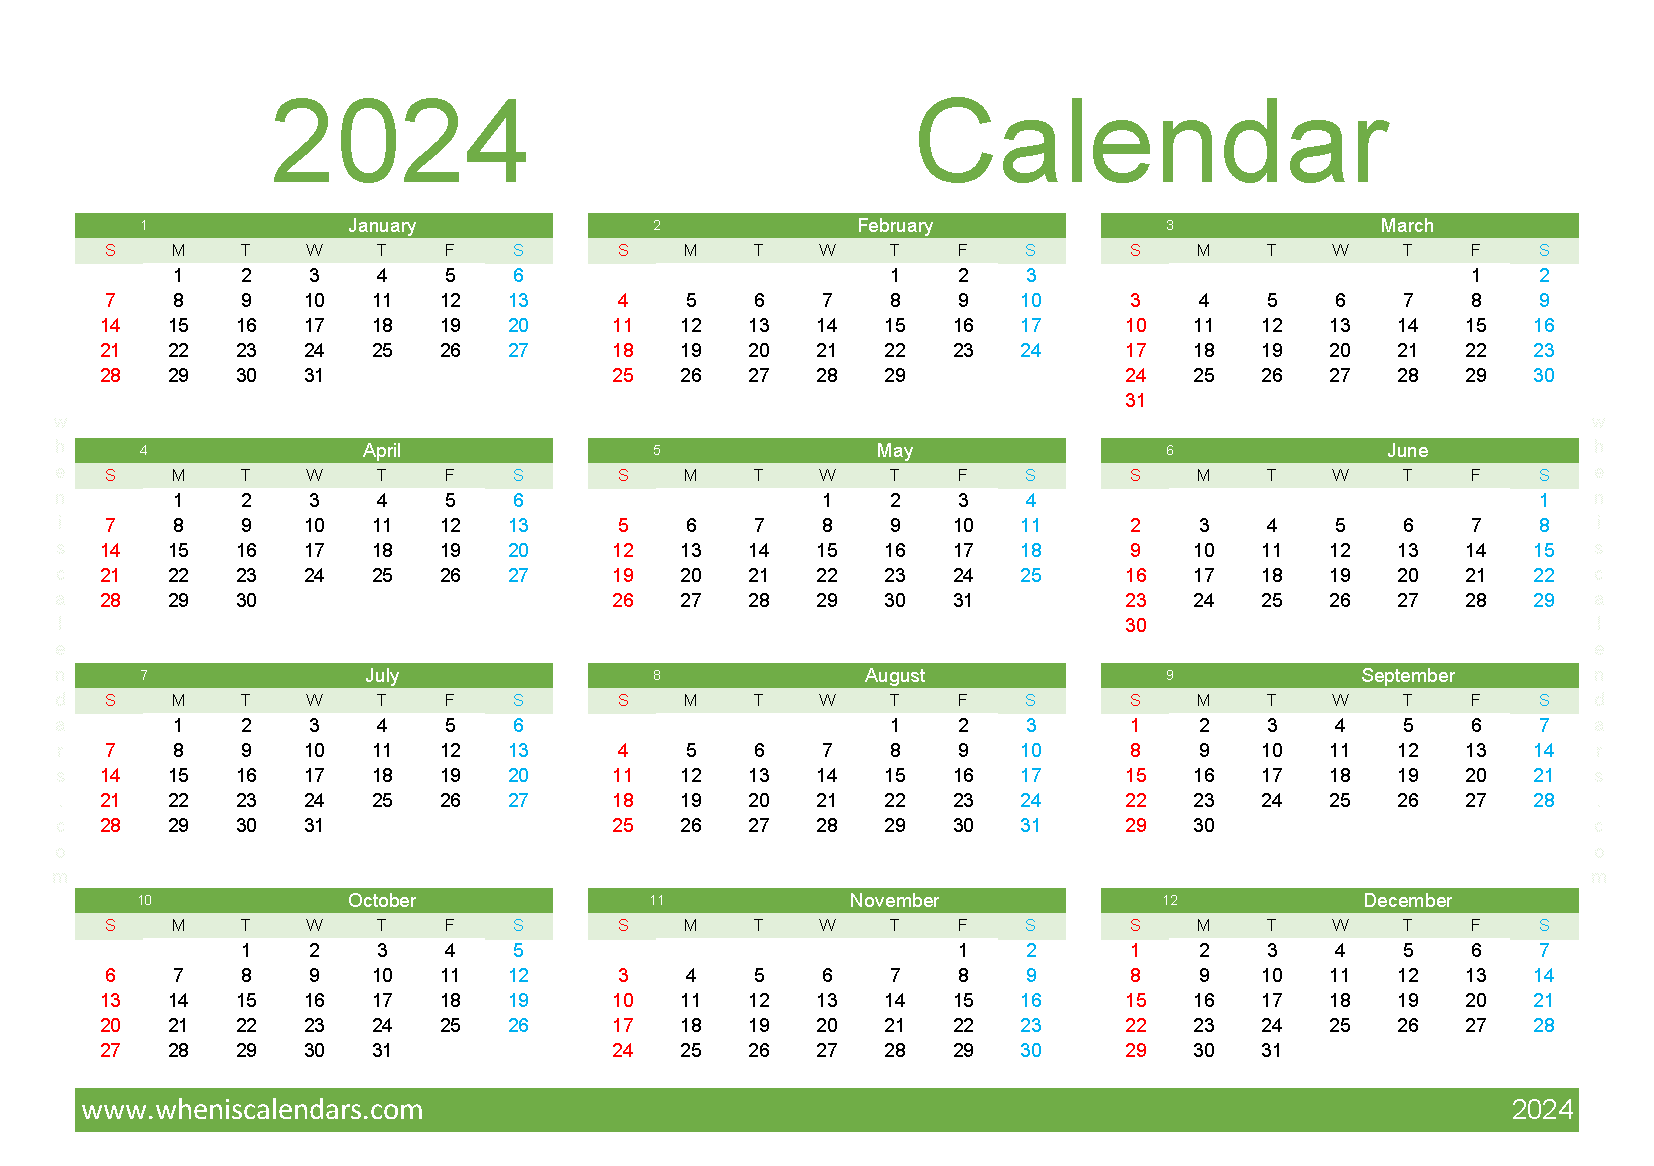 Download print a calendar com 2024 with holidays A5 Horizontal (O4Y144)